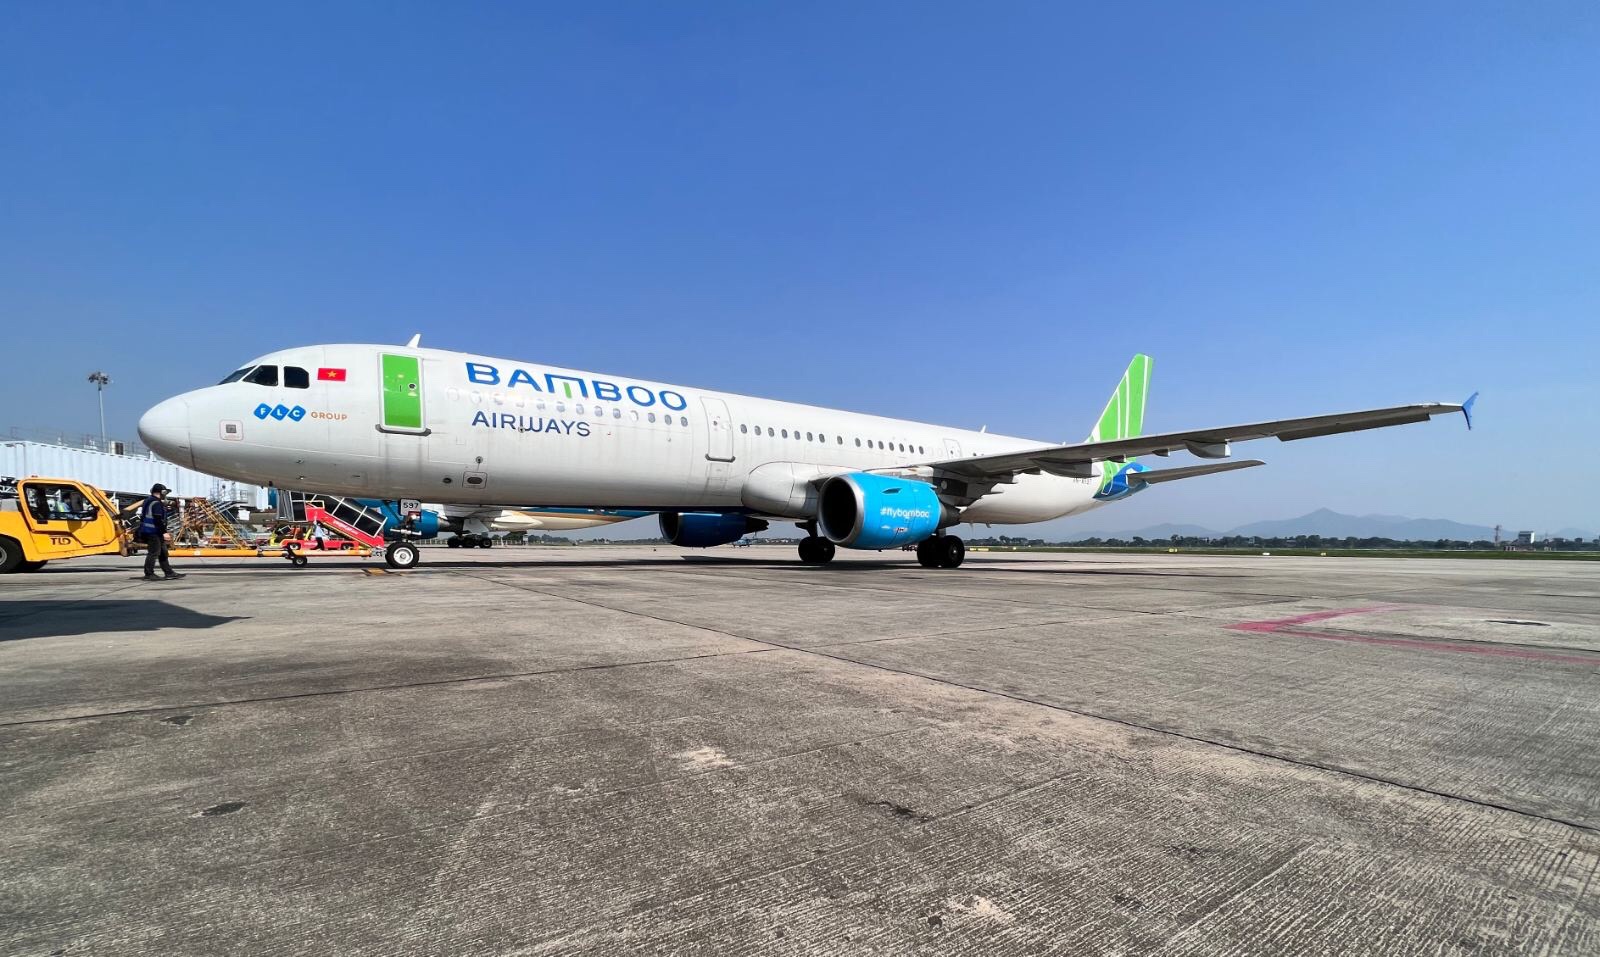  Bamboo Airways khai thác đường bay thường lệ Hà Nội – Singapore bằng dòng máy bay A321 hiện đại